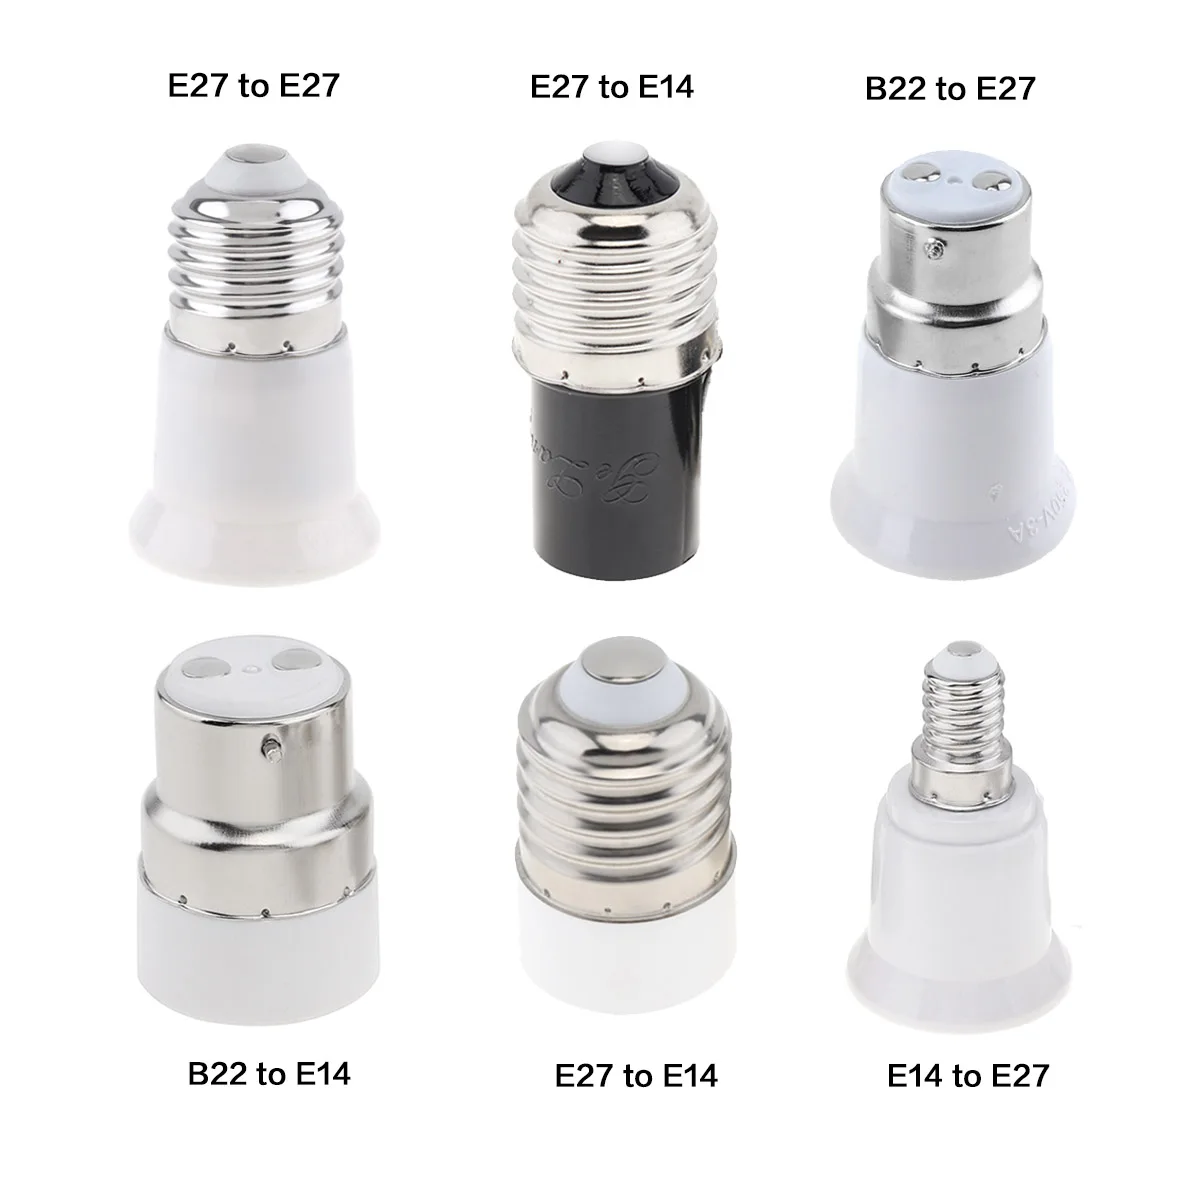 5pcs/set LED Lamp Holder Base Adapter Universal Light Bulb Converter Lamp Socket B22 E27 E14 E26 LED GU10 For Home Lighting